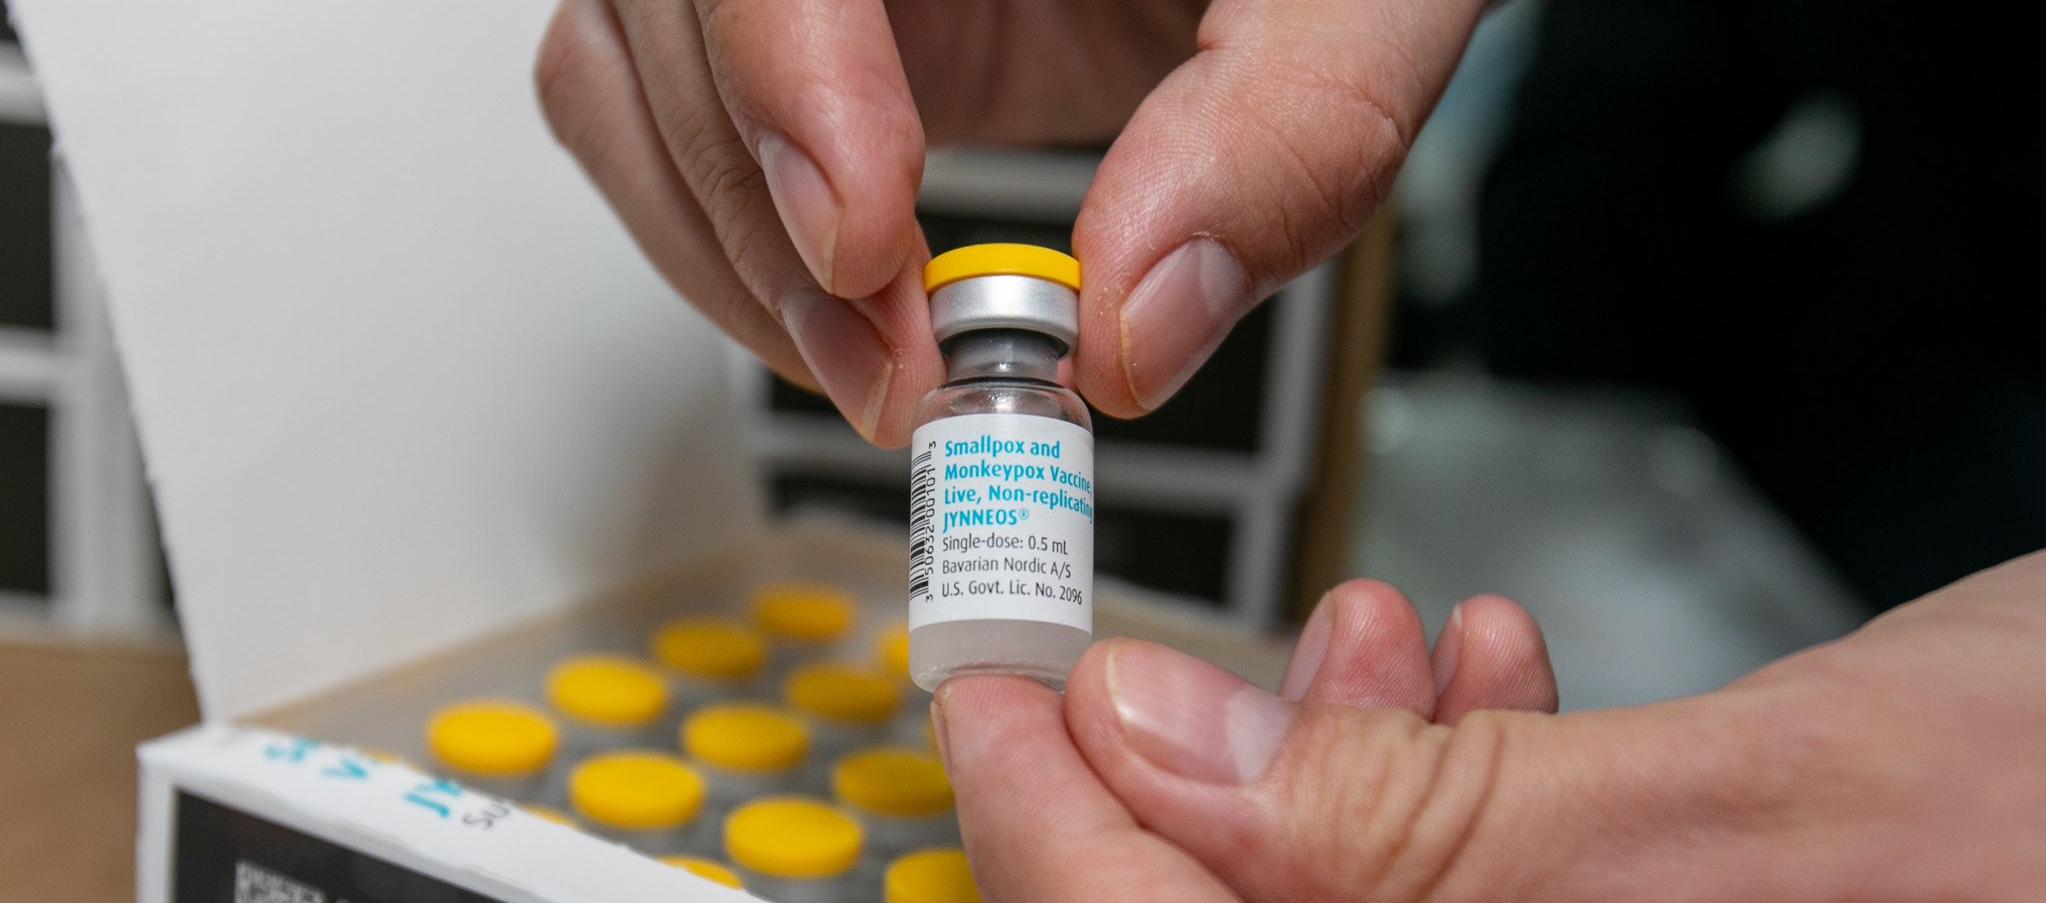 Colombia registra 4.021 casos de viruela símica.